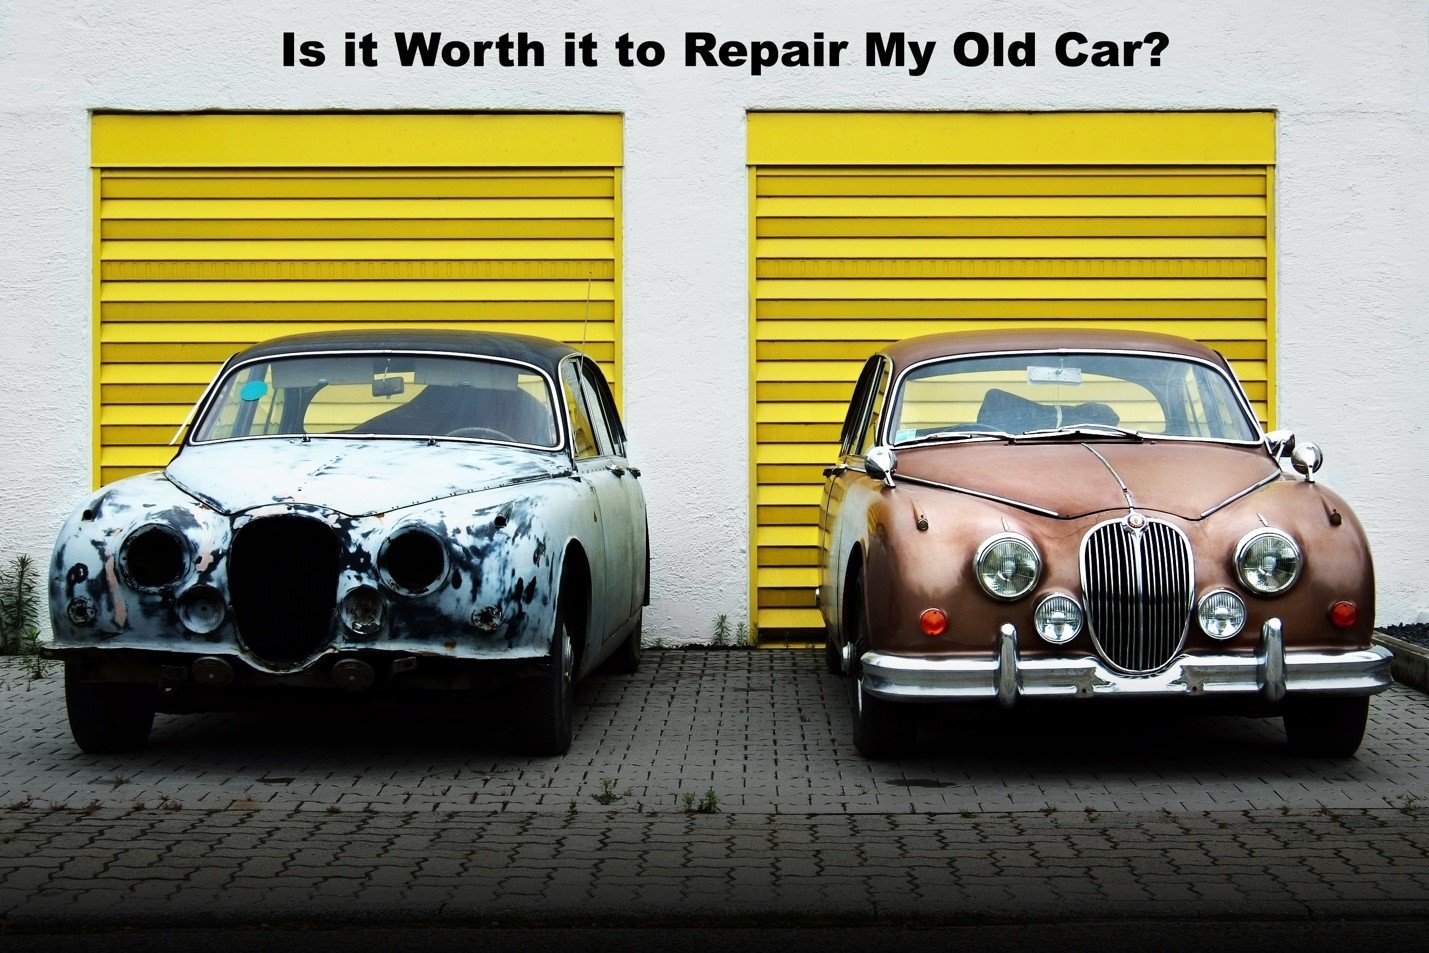 repair my old car